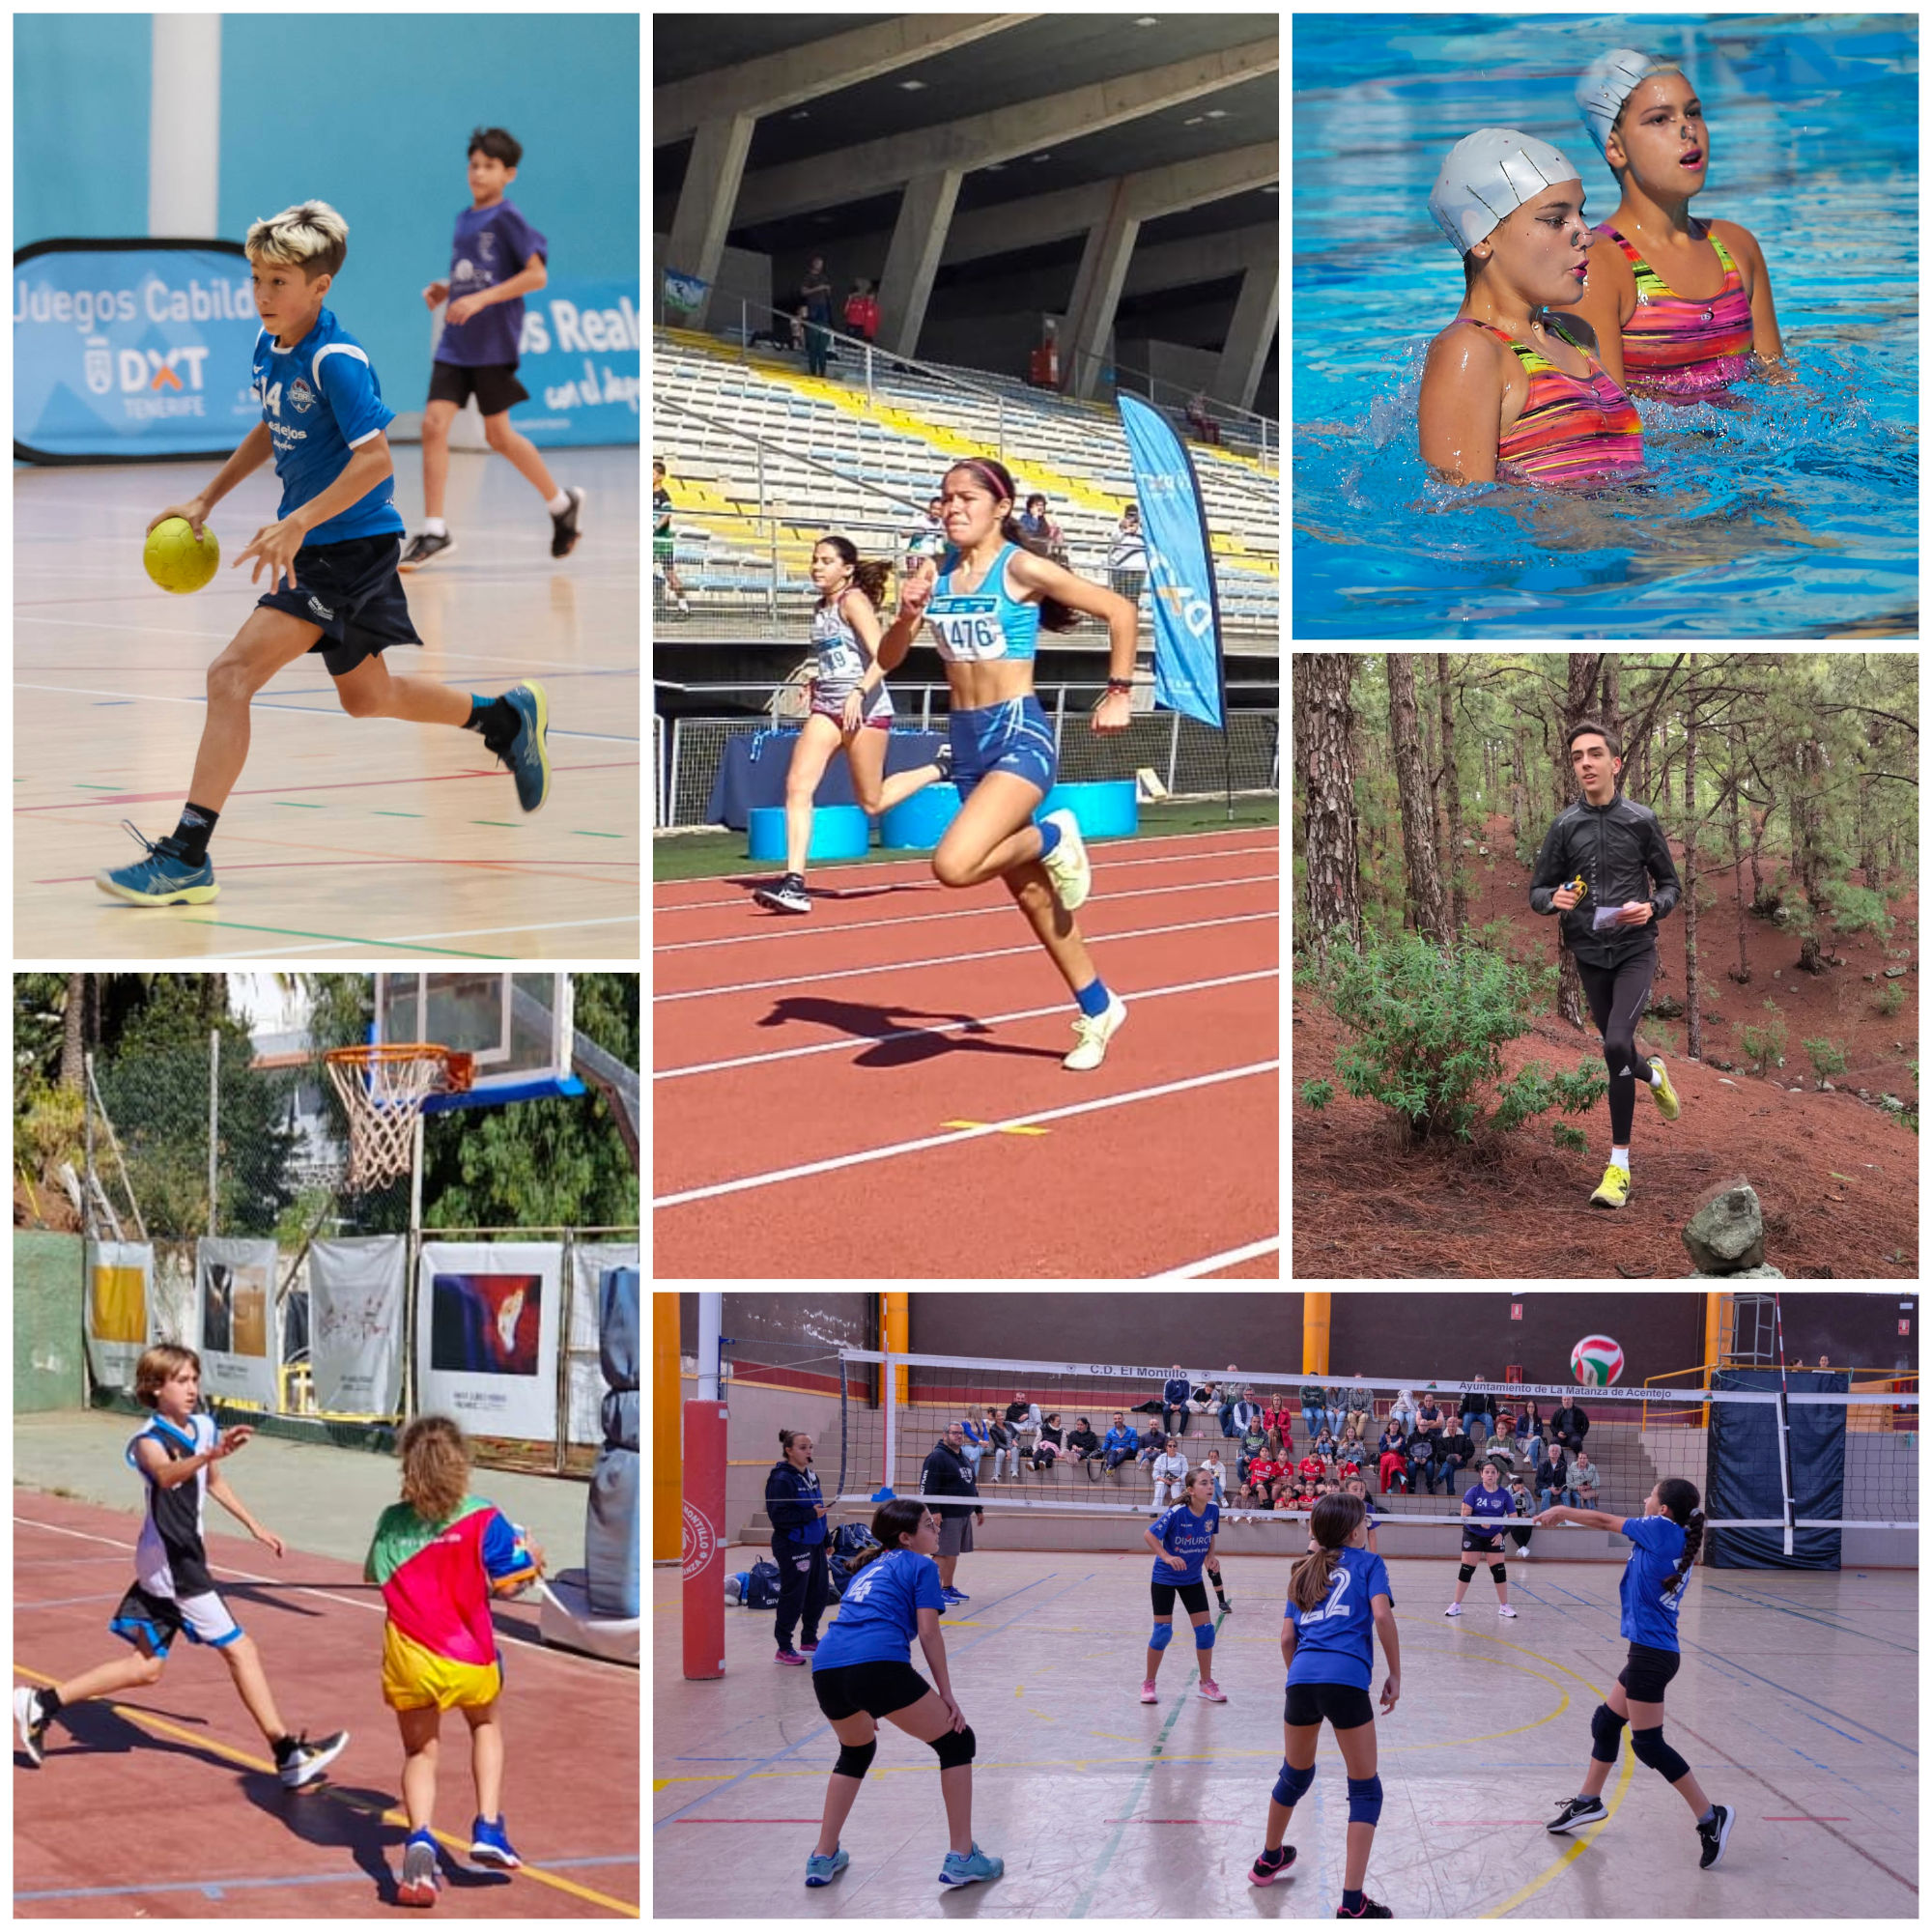 Los Juegos Cabildo afrontan este sábado su decimoquinta jornada con seis propuestas deportivas